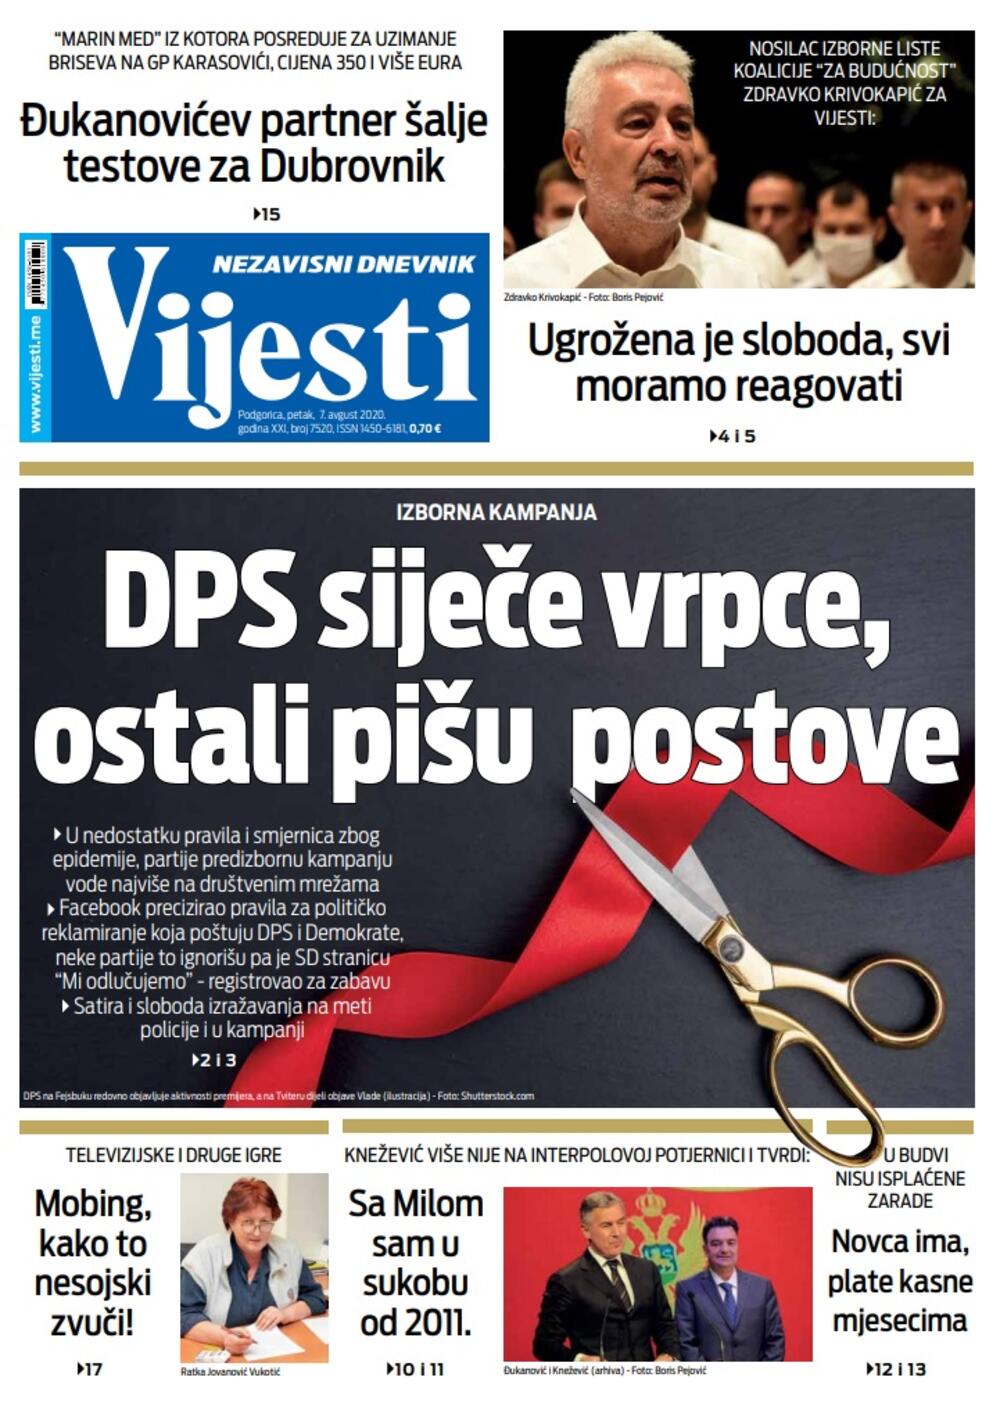 Naslovna strana "Vijesti" za 7. avgust, Foto: Vijesti